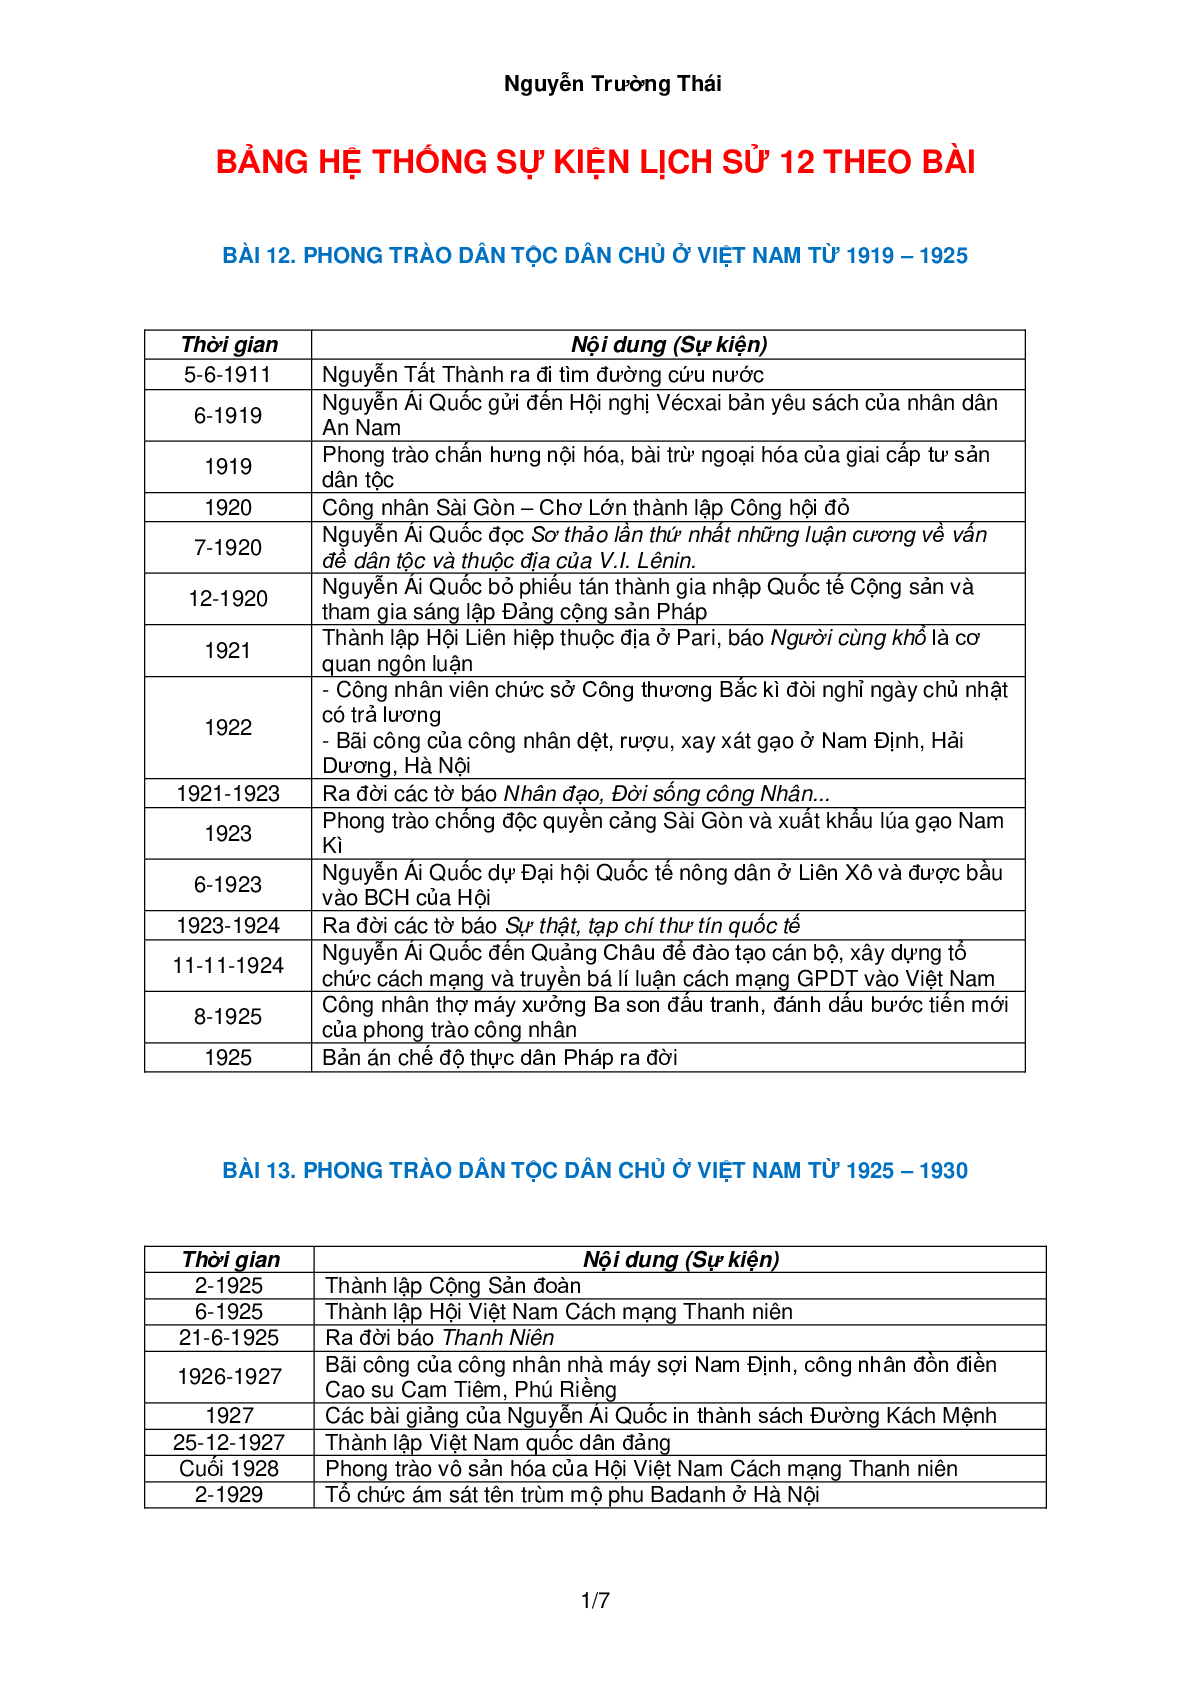 Bảng hệ thống sự kiện lịch sử Việt Nam theo bài môn Lịch sử lớp 12 (trang 1)